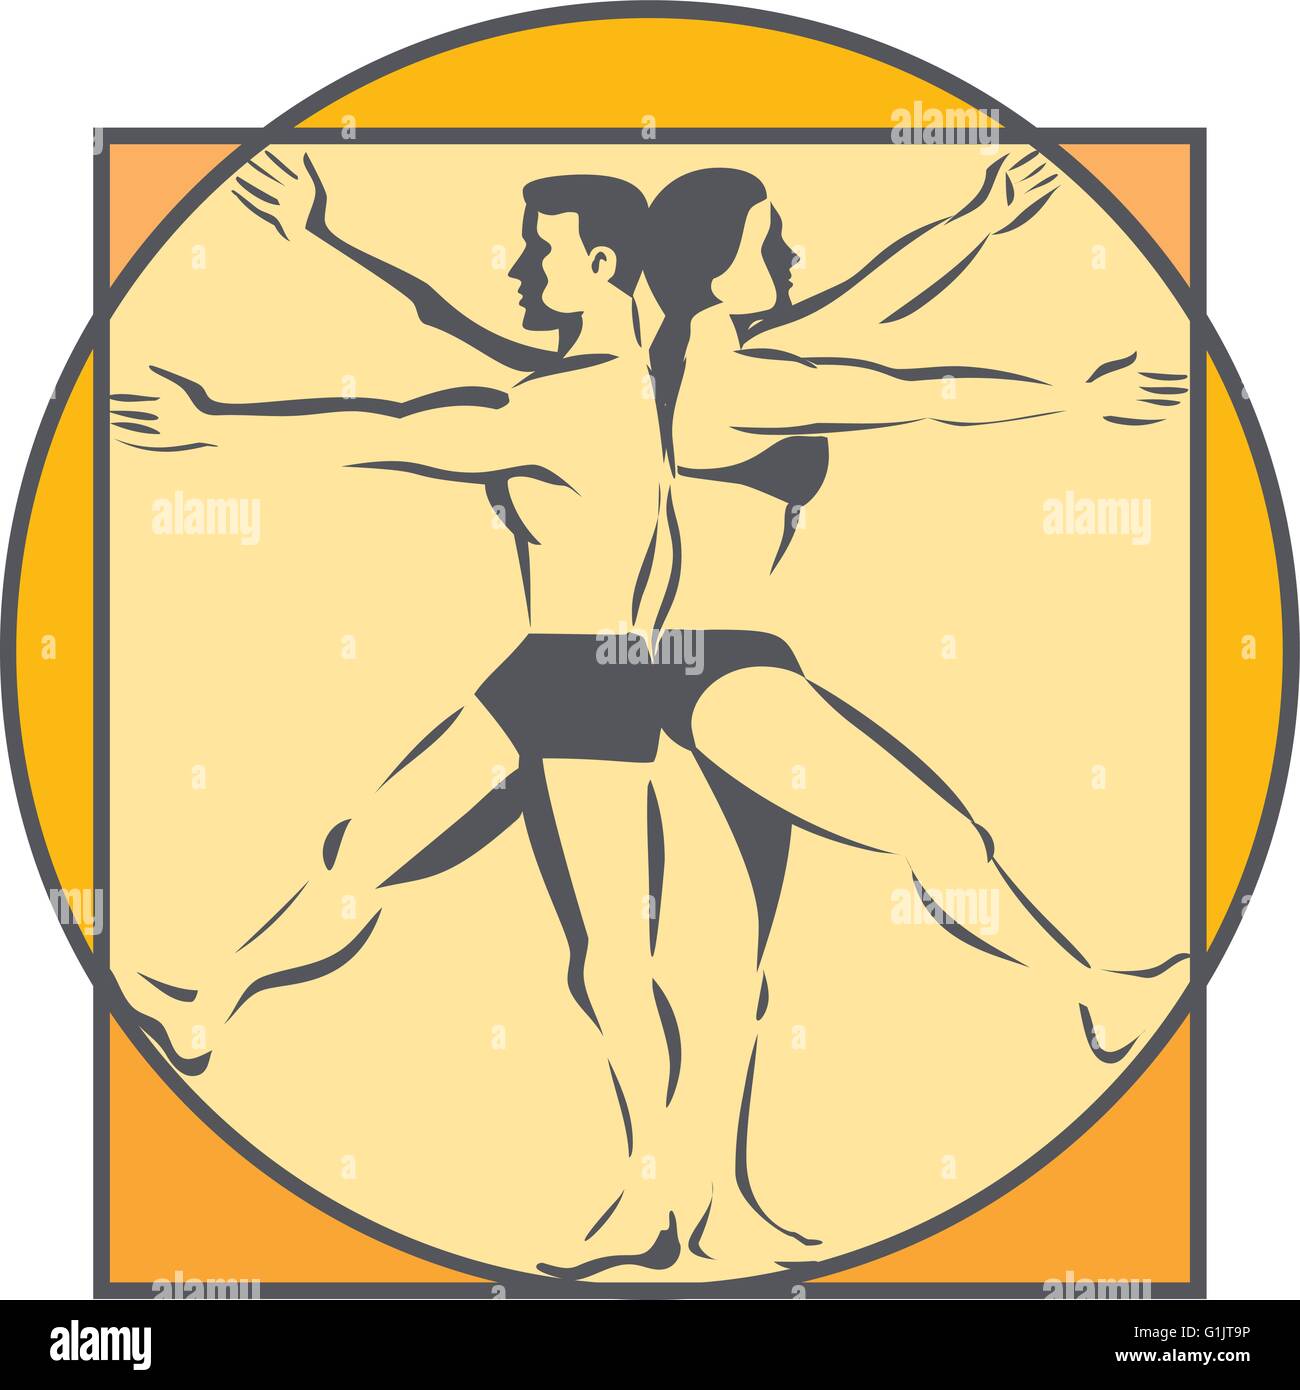 Strichzeichnung Stil Abbildung auf den Da Vinci Mann Vitruvian Mann männlich weiblich stehen Rücken an Rücken mit Armen und Beinen erhöht erweitert gesehen von der Seite, die im inneren Kreis im retro-Stil gemacht. Stock Vektor